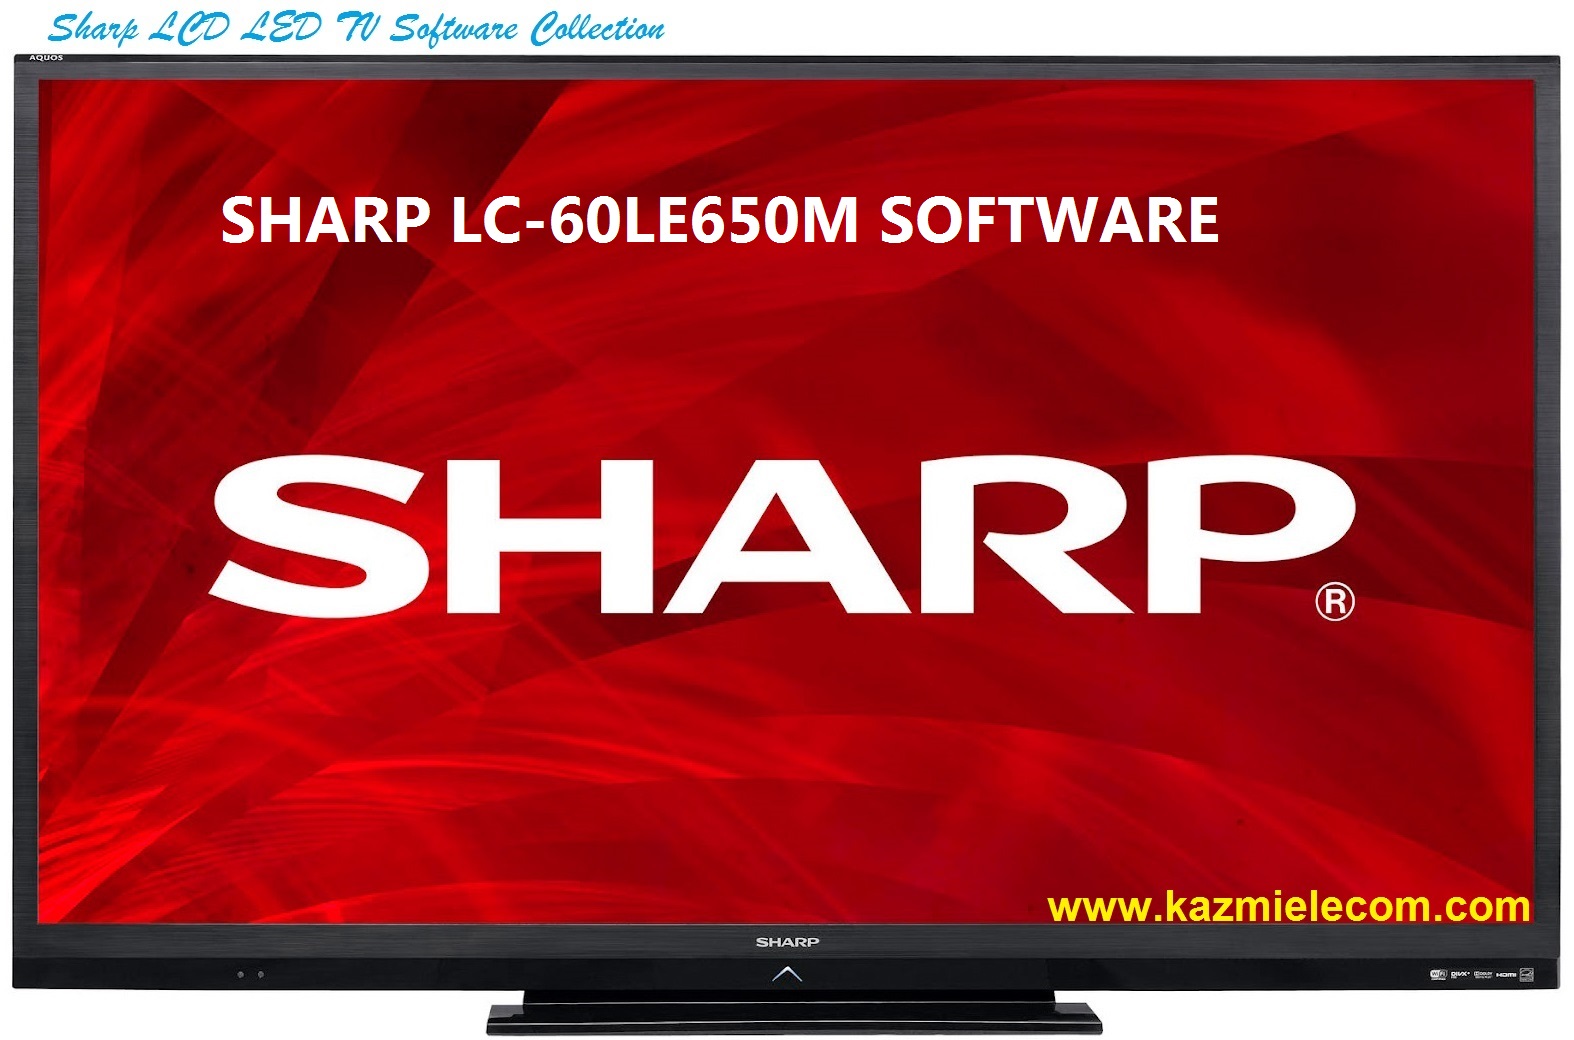 Sharp Lc-60Le650M